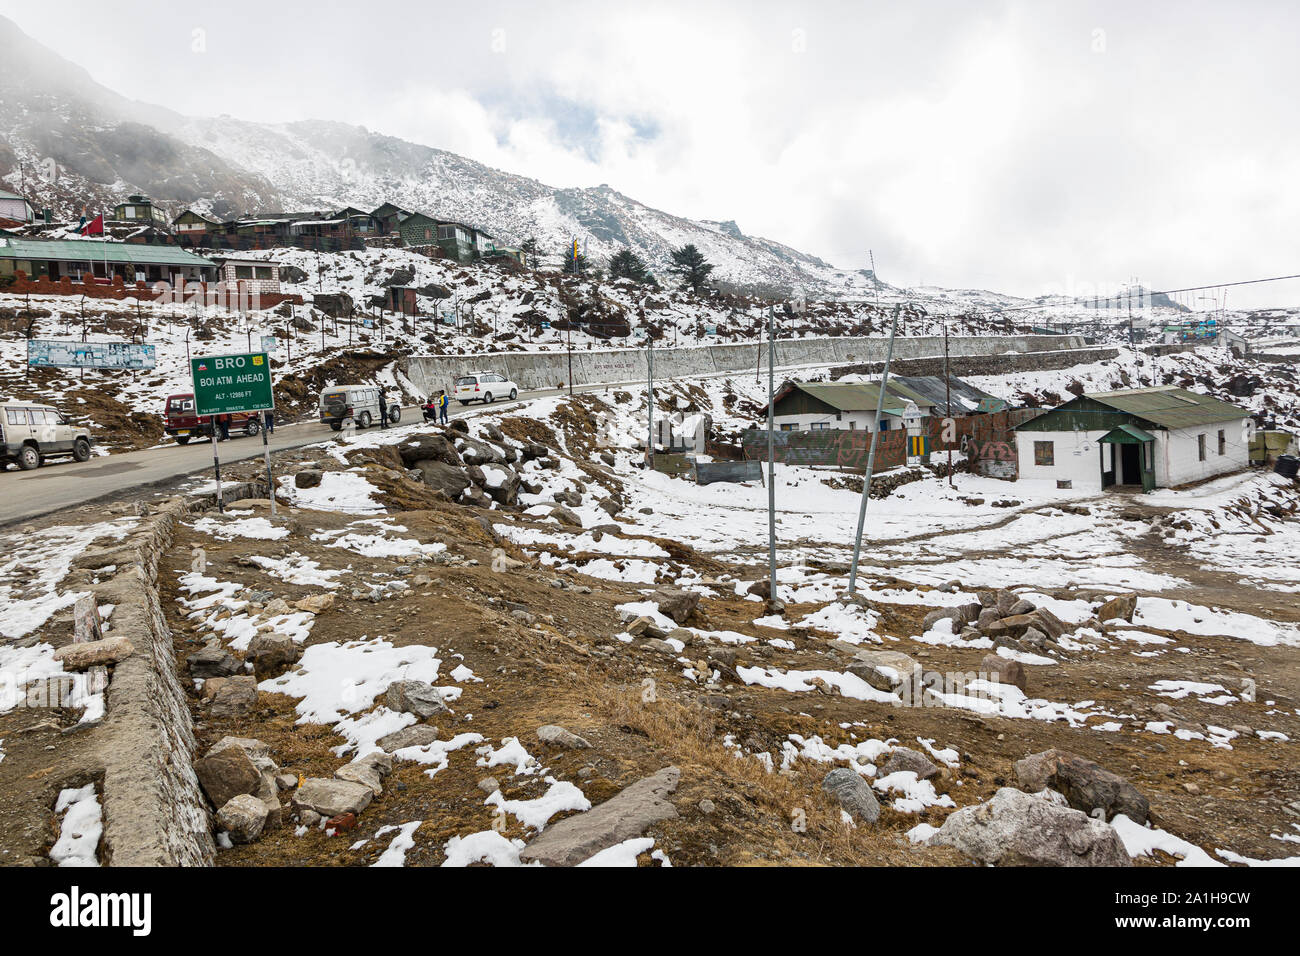 Vista de nieve que conduce a la ruta clad Nathu La pass, que es la frontera internacional entre India y China en el estado de Sikkim Foto de stock